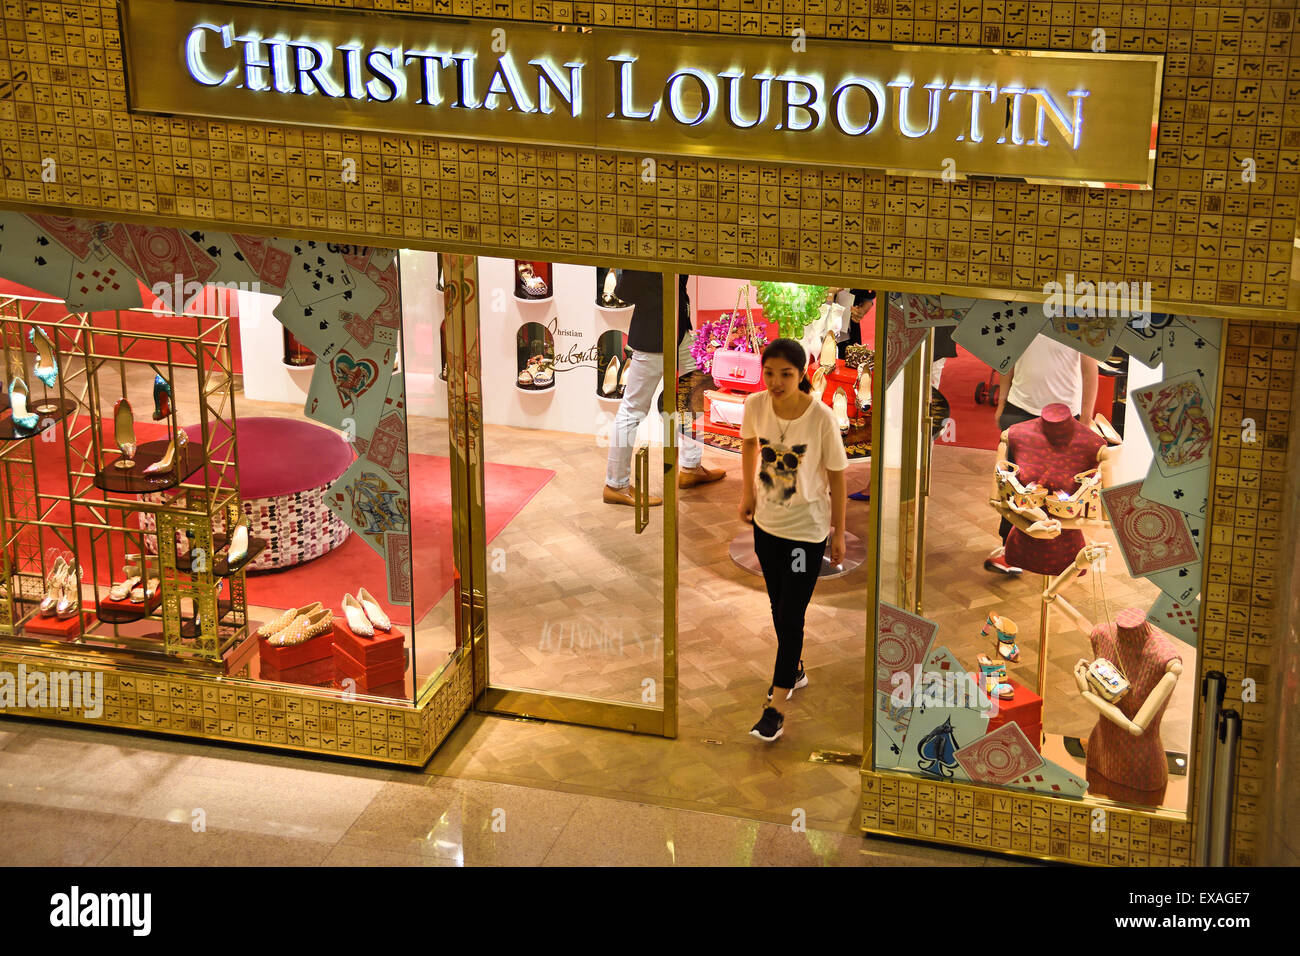 Christian Louboutin Shoe Banque d'image et photos - Alamy